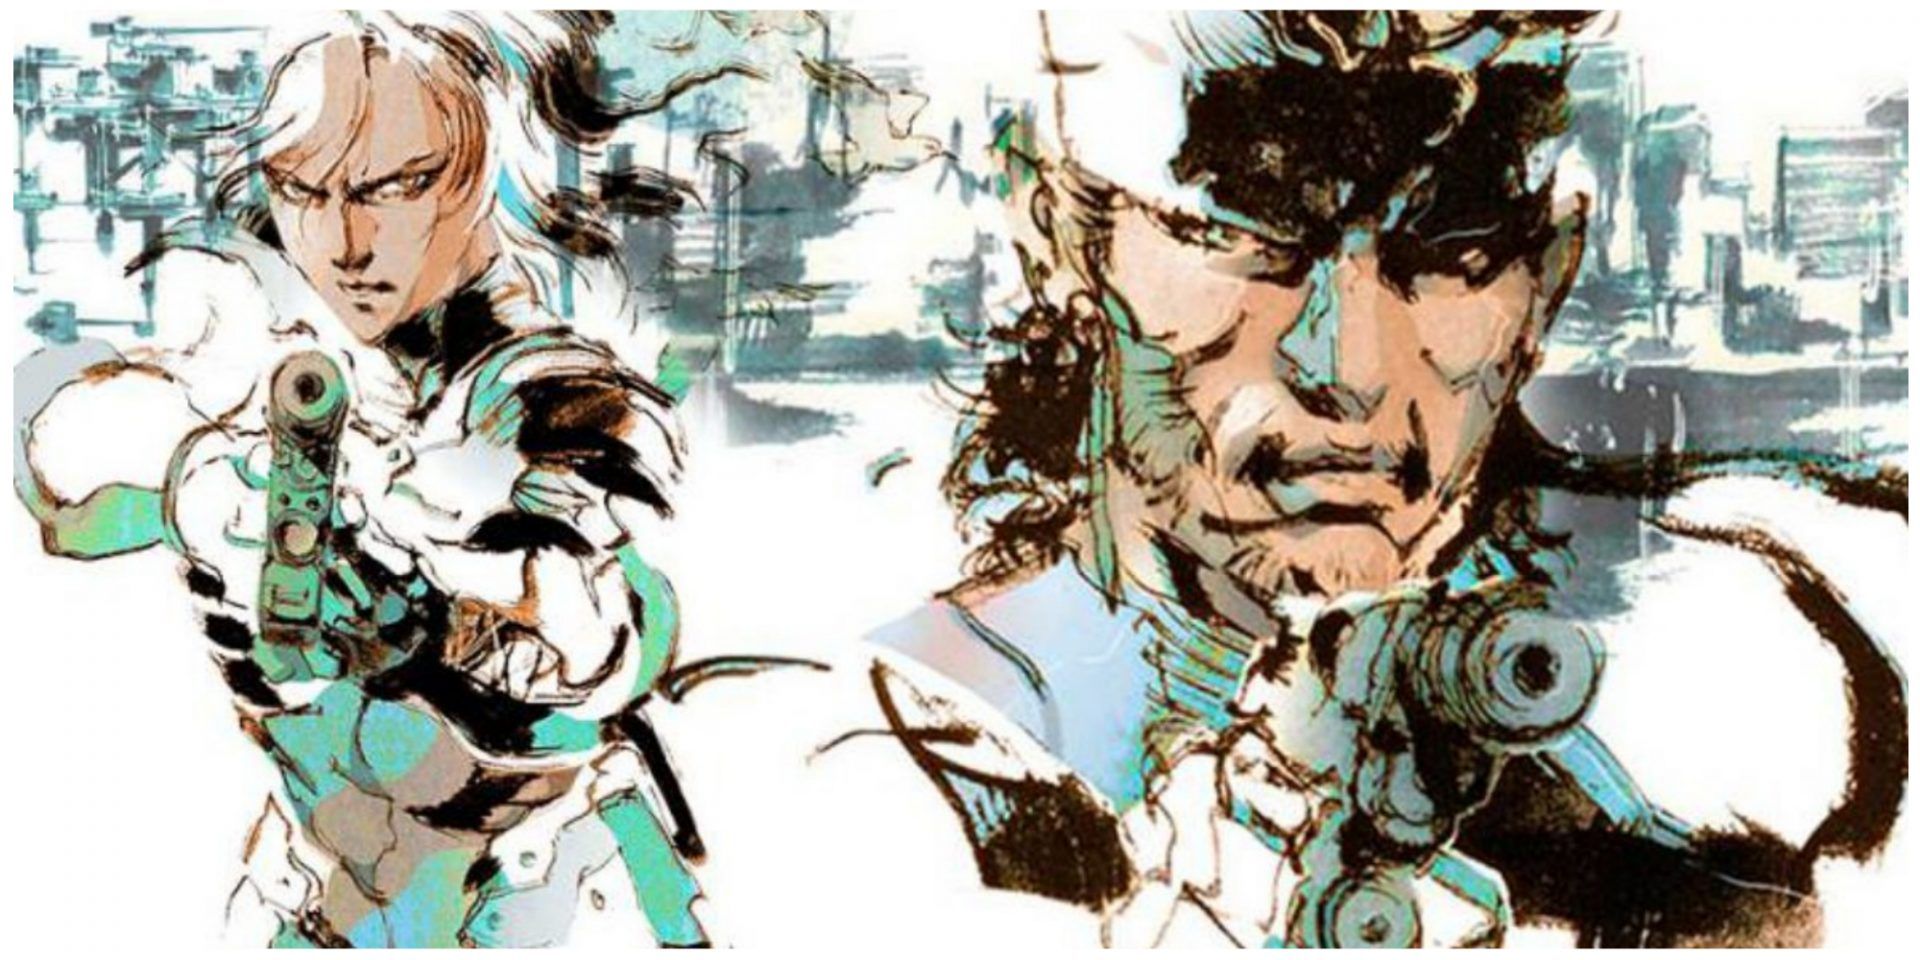 Metal Gear Solid 2 Raiden and Snake Art Yoji Shinkawa